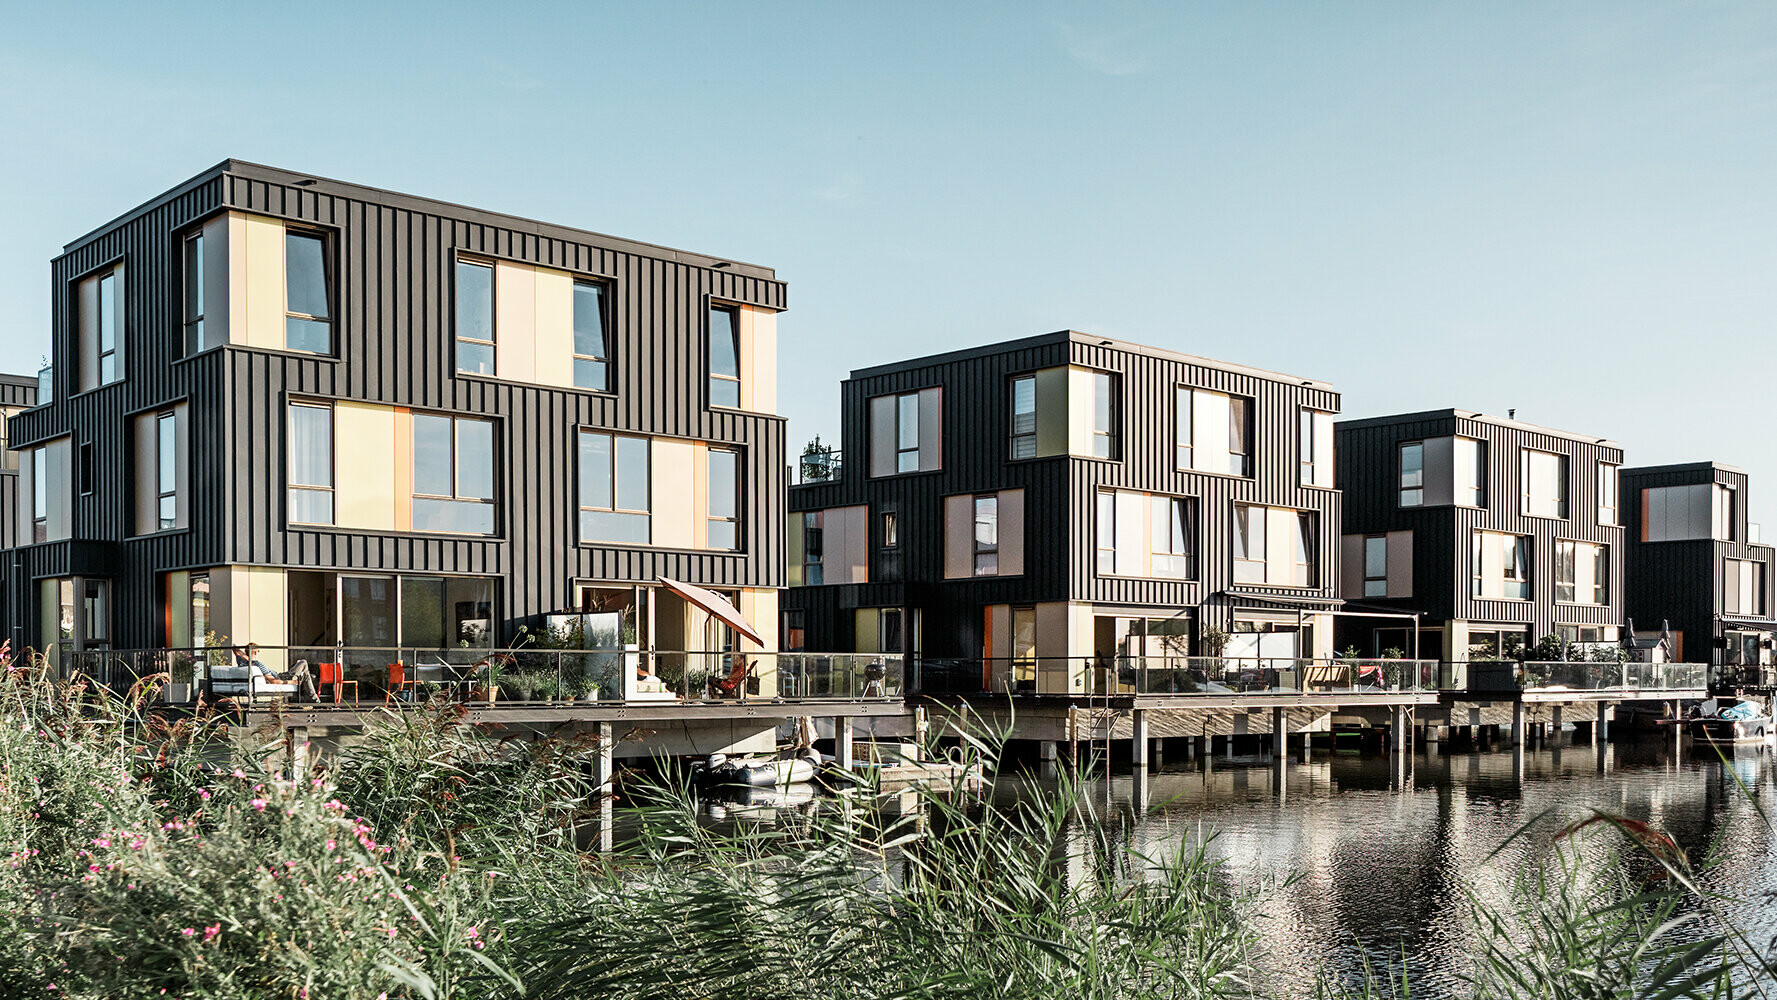 Woonwijk in Amsterdam met woongebouwen met antracietkleurige Prefalz-gevelbekleding